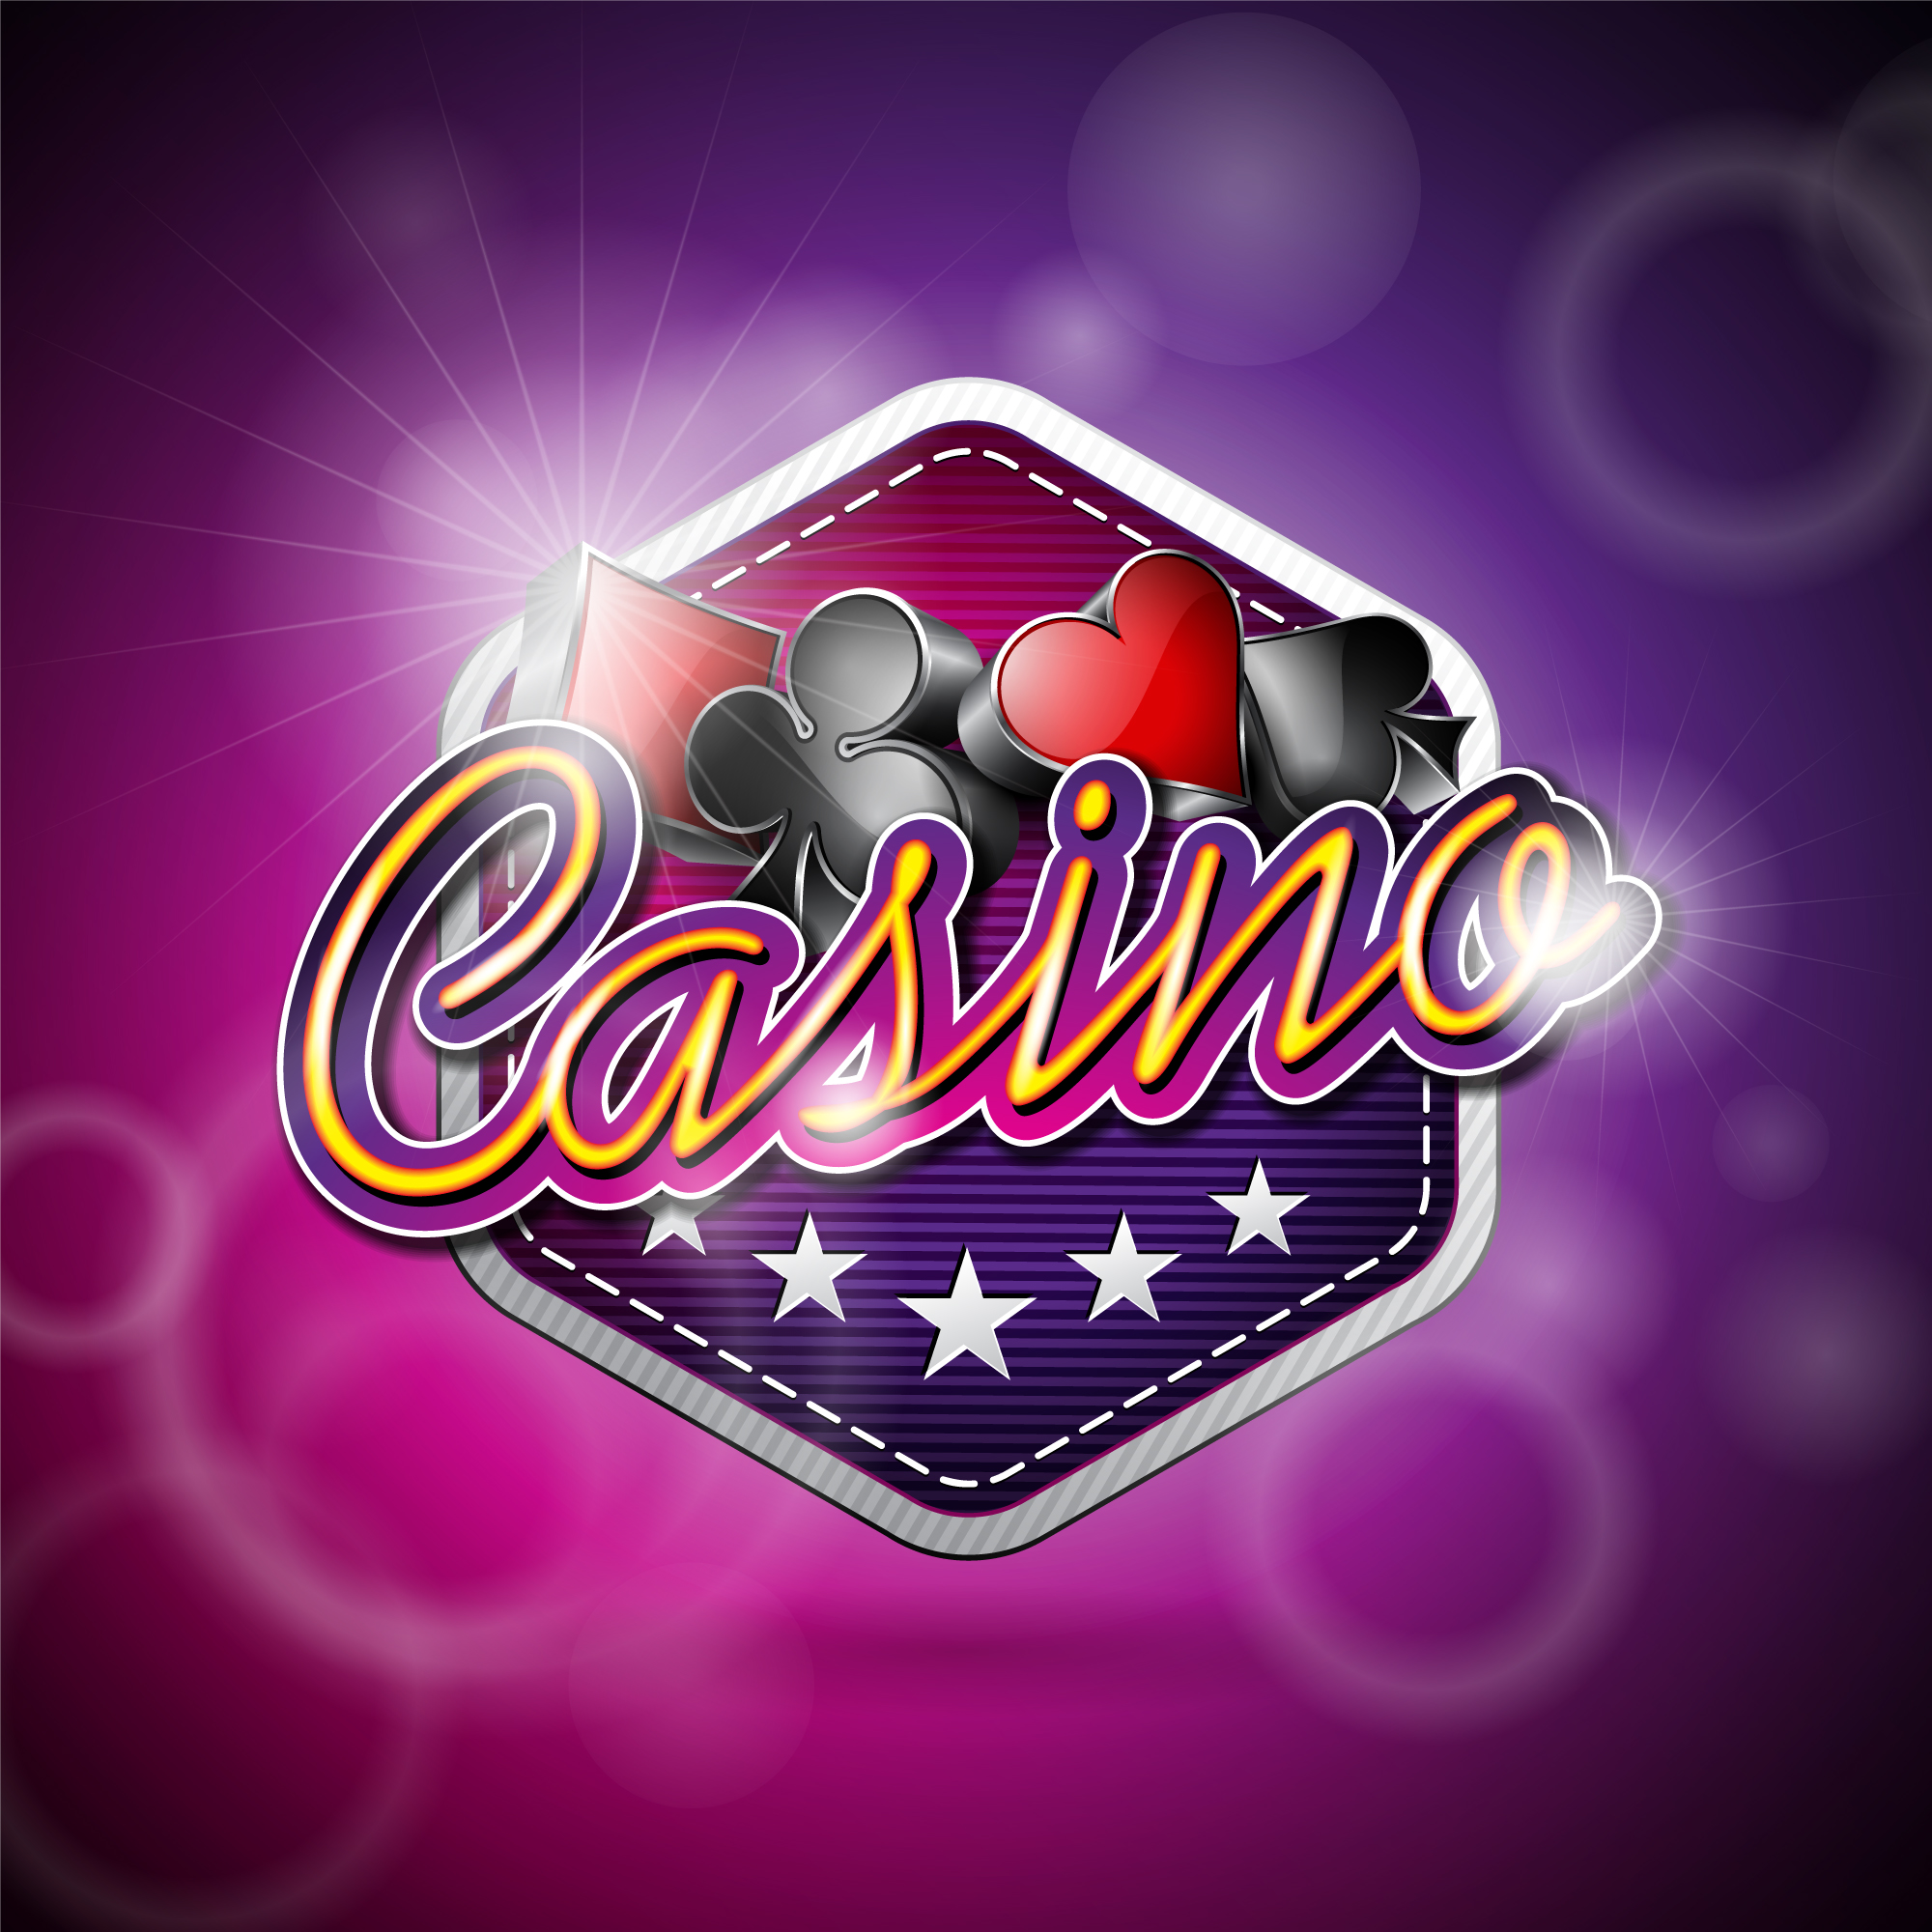 BST Casinos: Online Casinos in Ghana